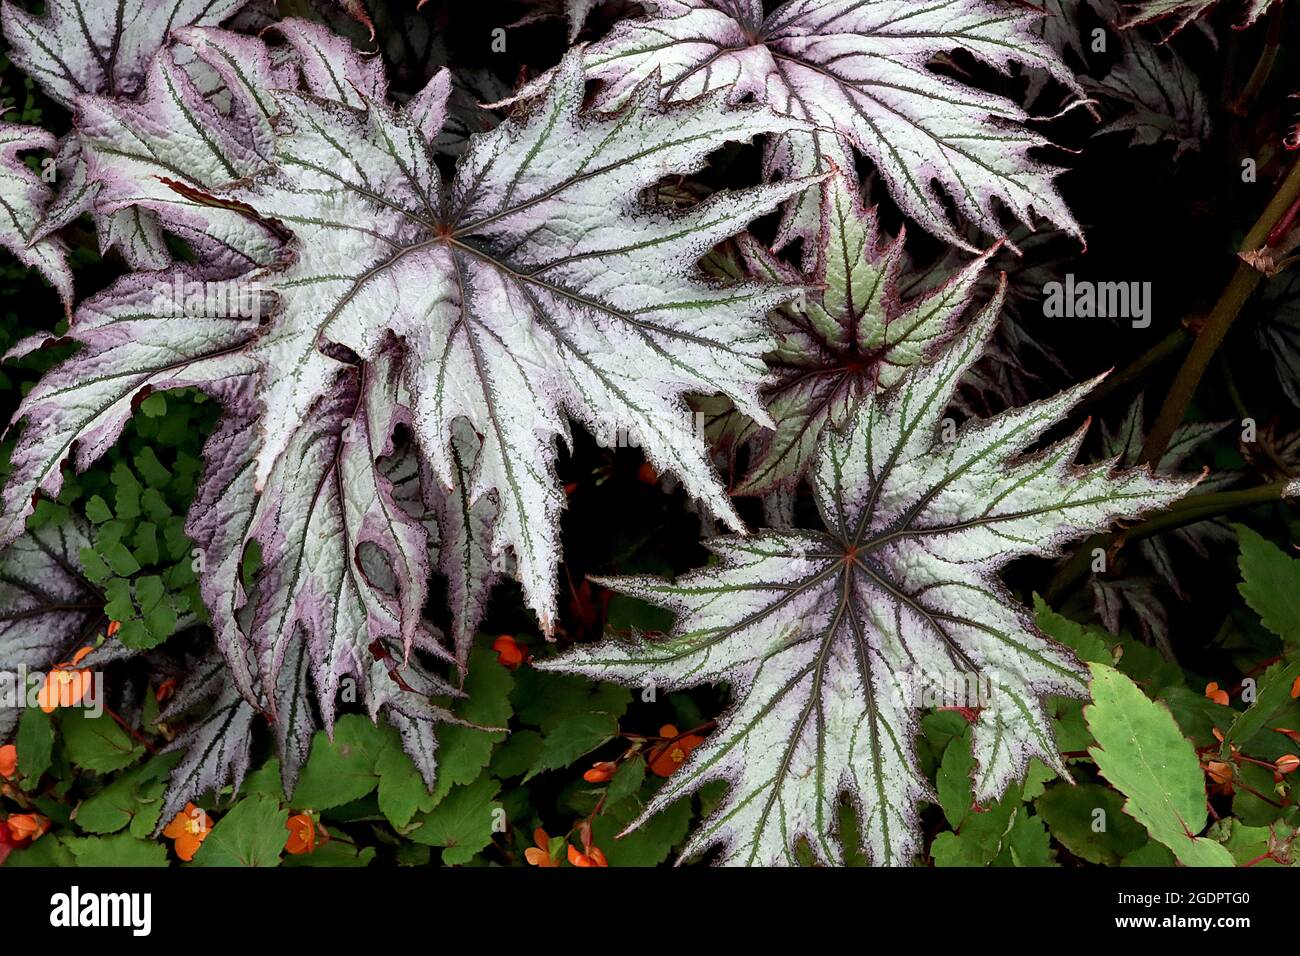 Begonia ‘Connie Boswell’ große tiefgelappte dunkelgrüne Blätter mit silbernem Zuckerguss und markanten Adern, Juli, England, Großbritannien Stockfoto